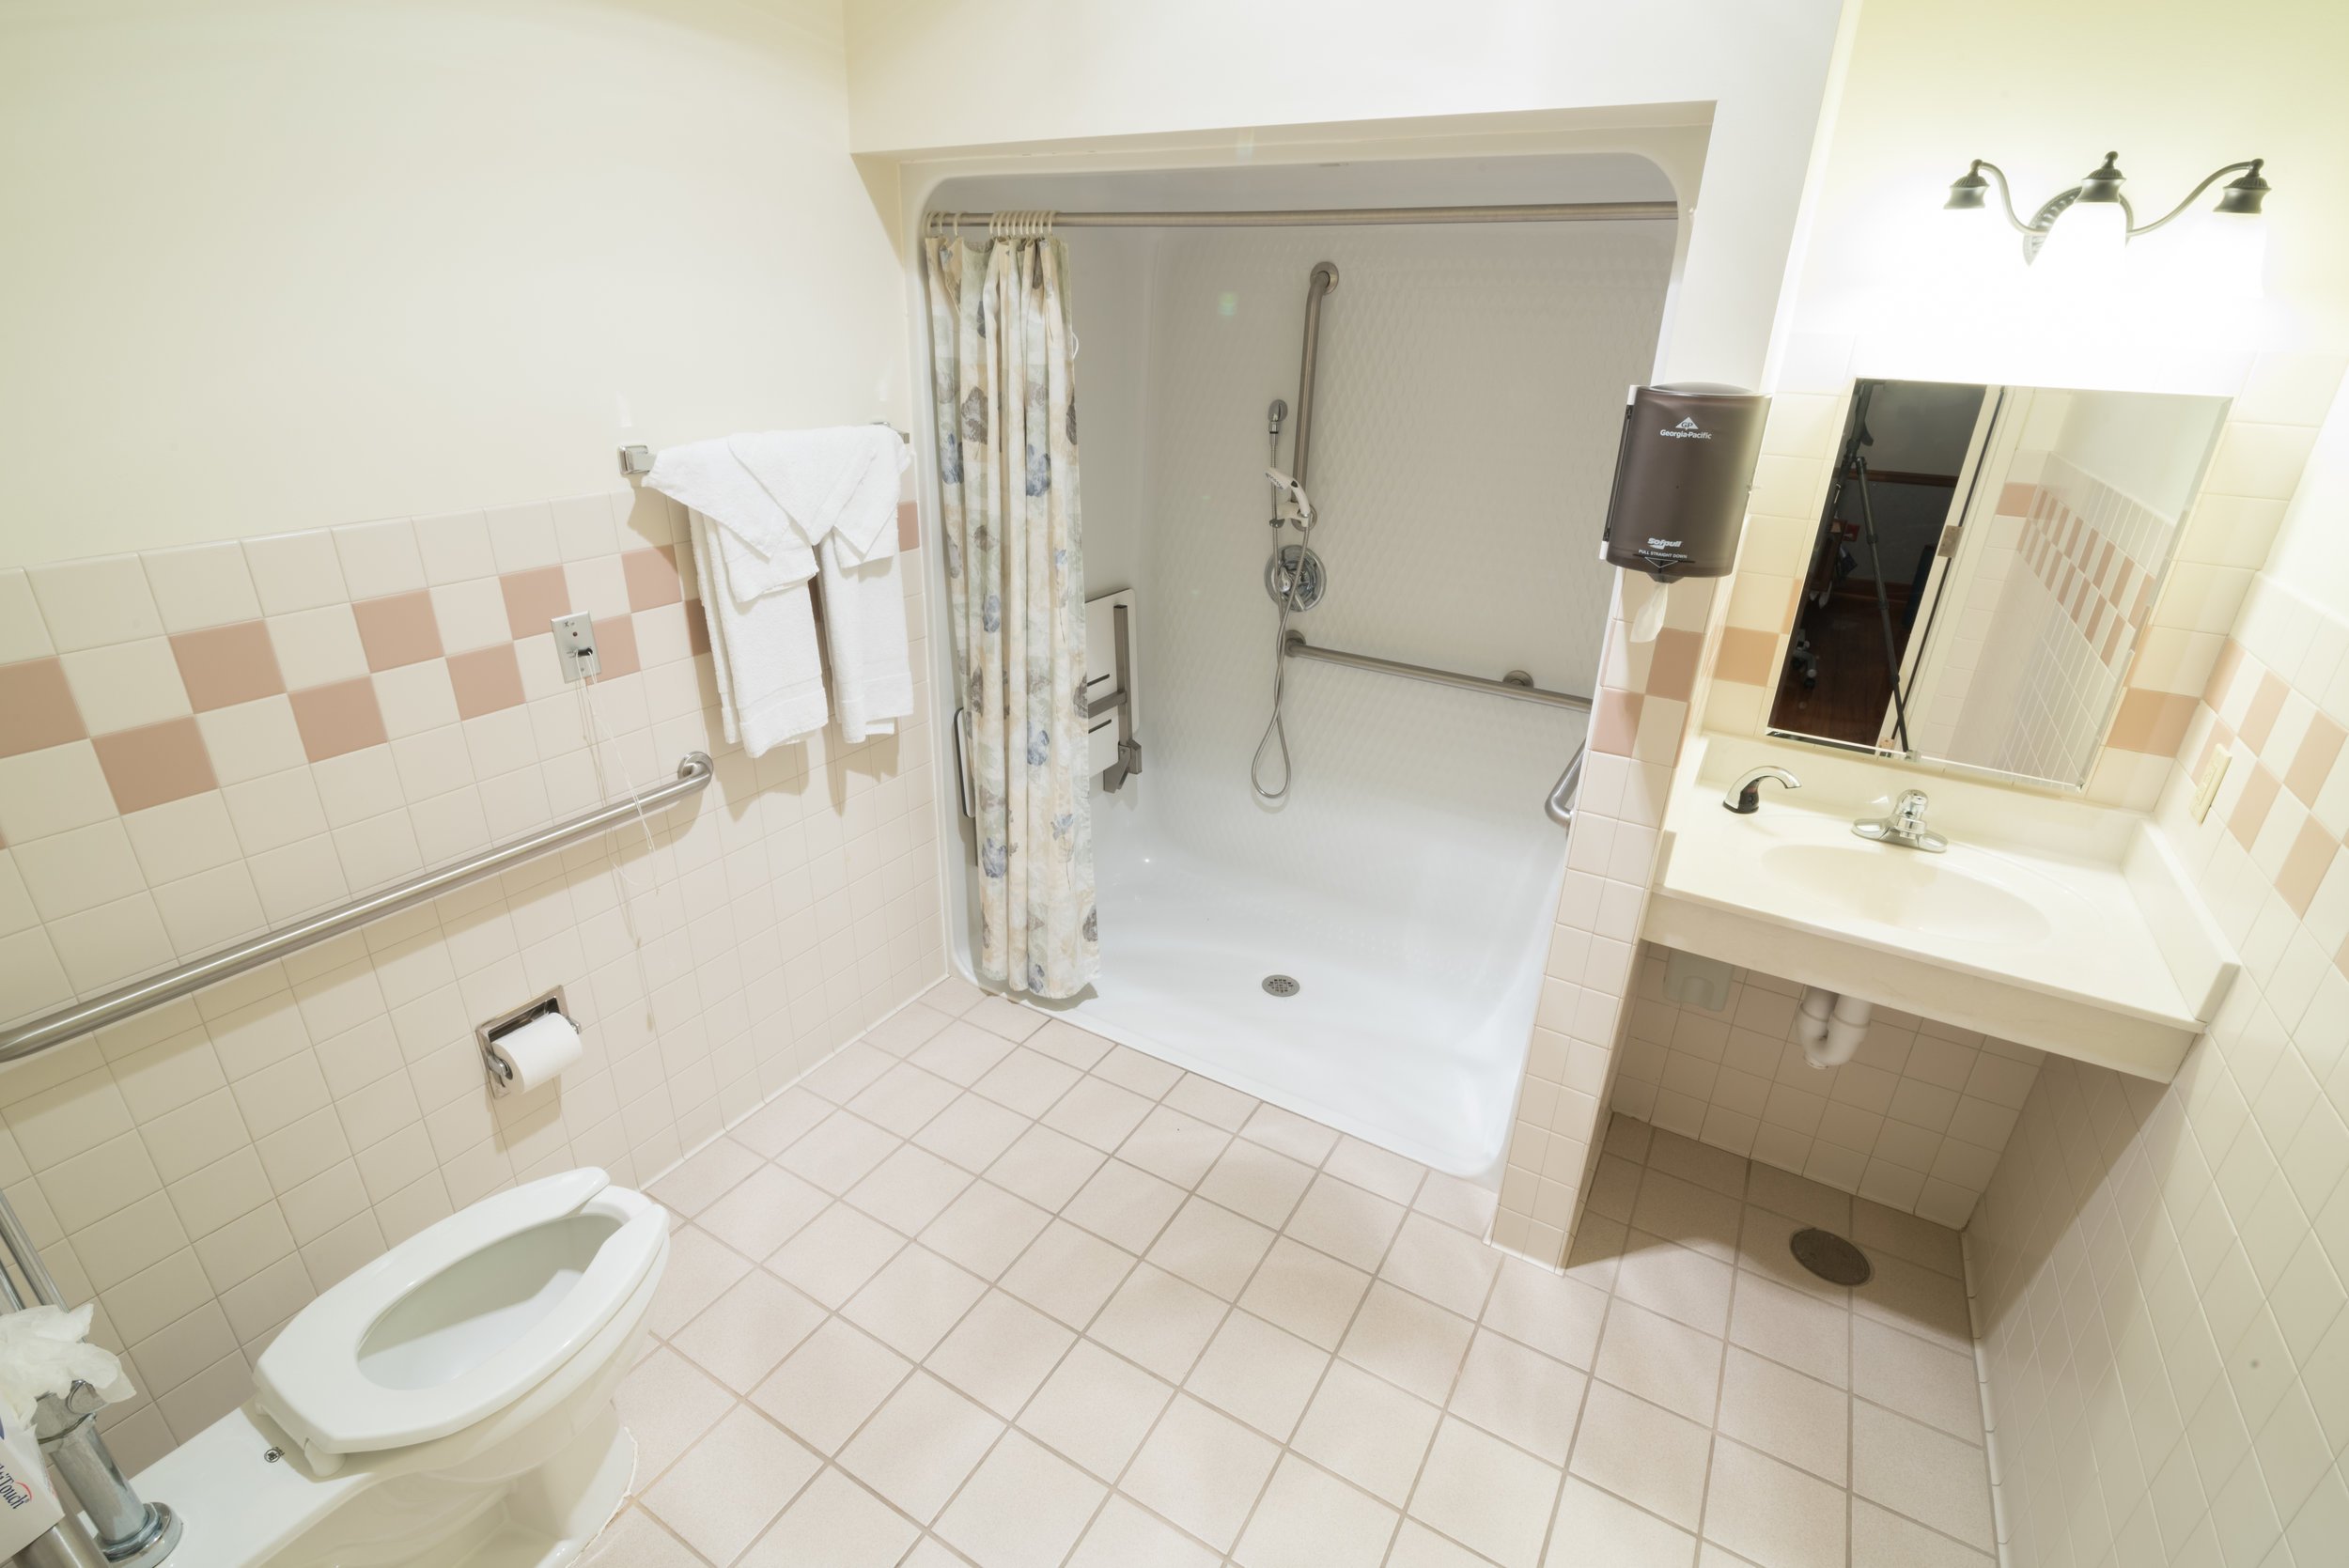 Catawba Valley Hospice House Bathroom.jpg